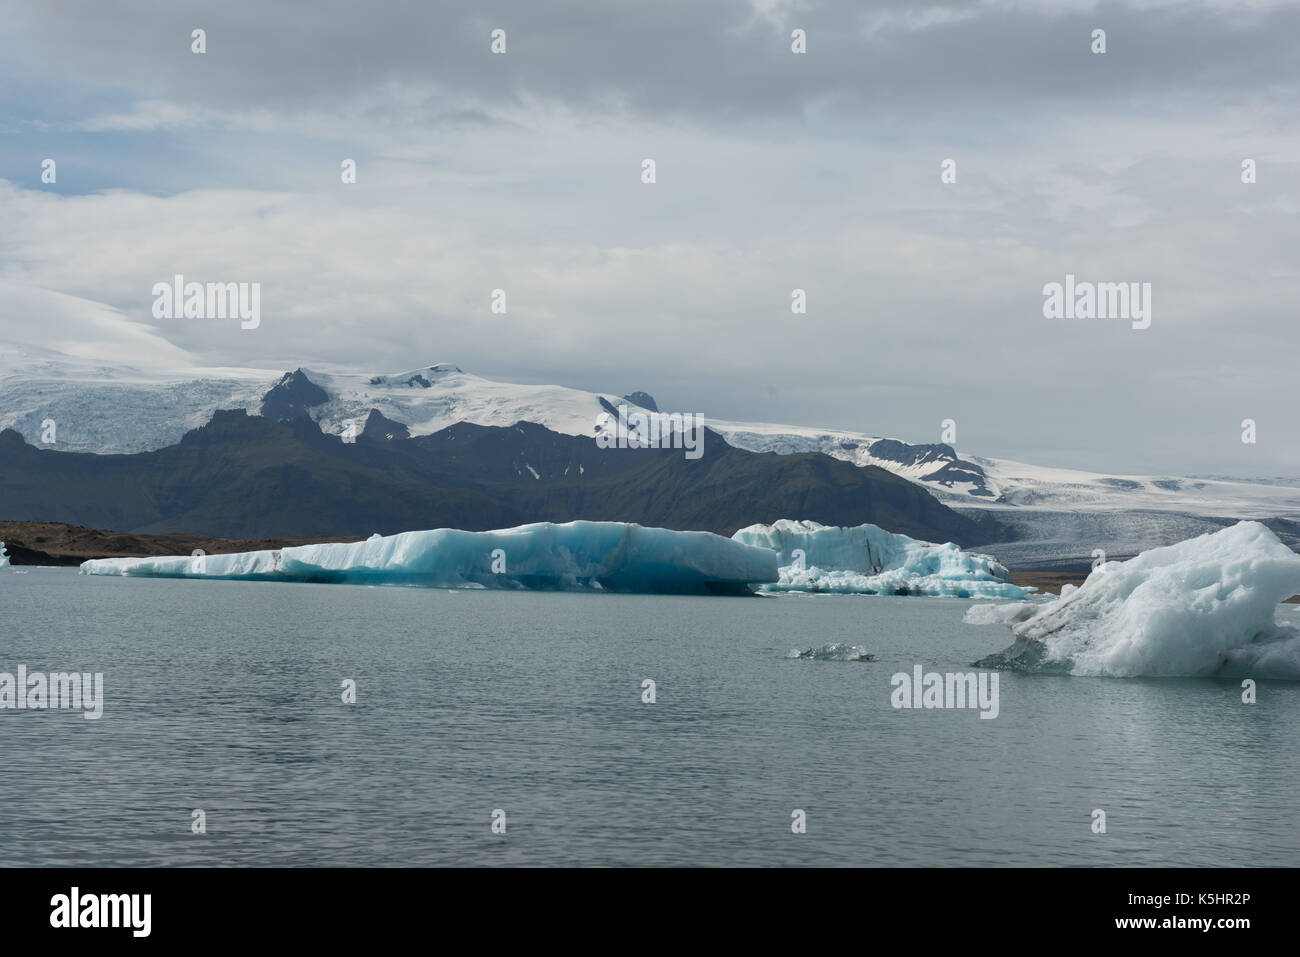 Eisberge in einem gletschersee vor der schmelzenden Gletscher Stockfoto